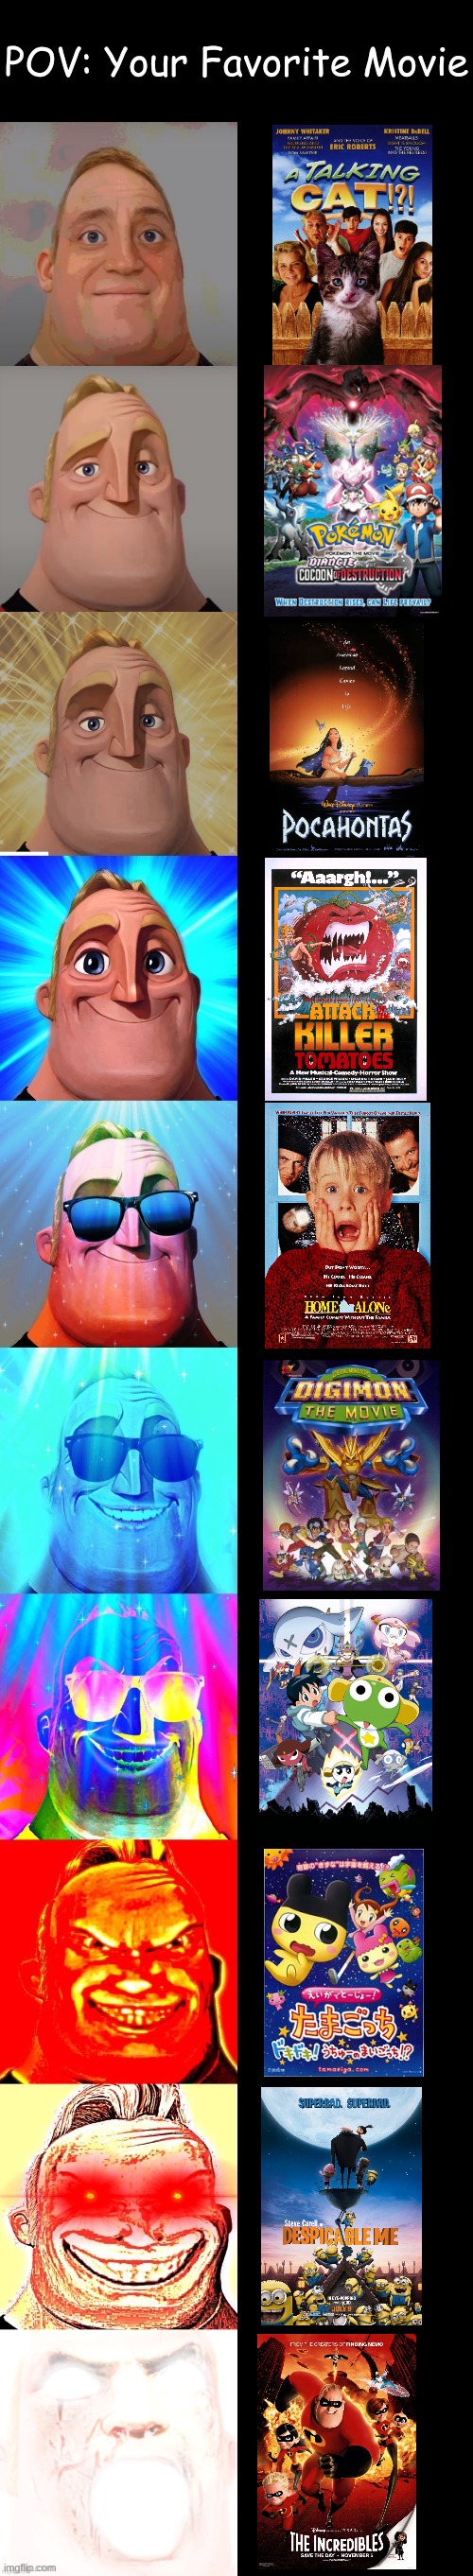 Mr Incredibles Memes - Imgflip